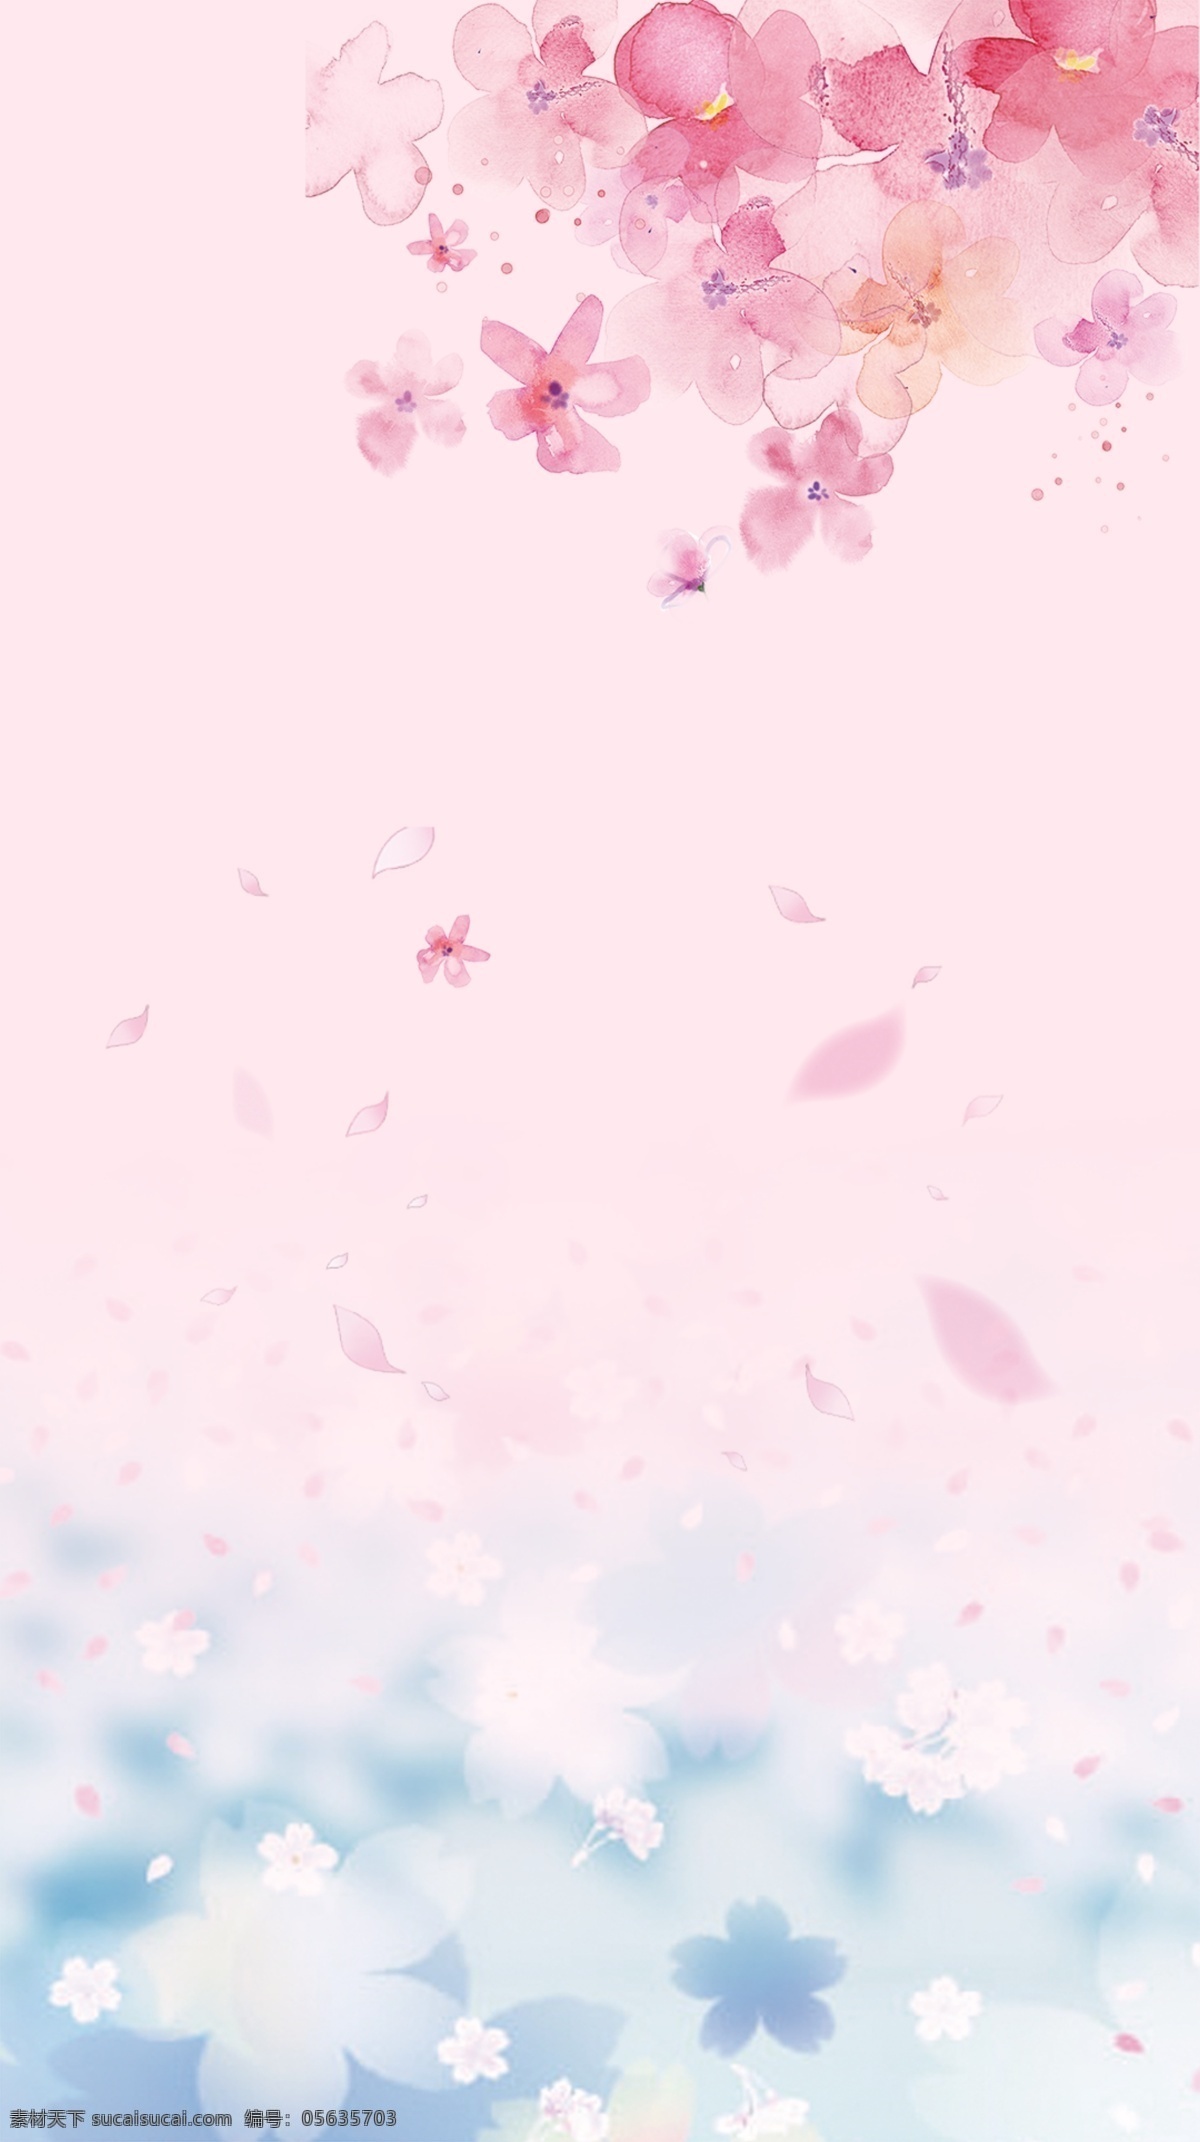 梦幻 粉色 花瓣 背景 可爱 中国风 粉色背景 可爱粉色背景 白云 花草 分层 透底图 源文件 设计素材 海报